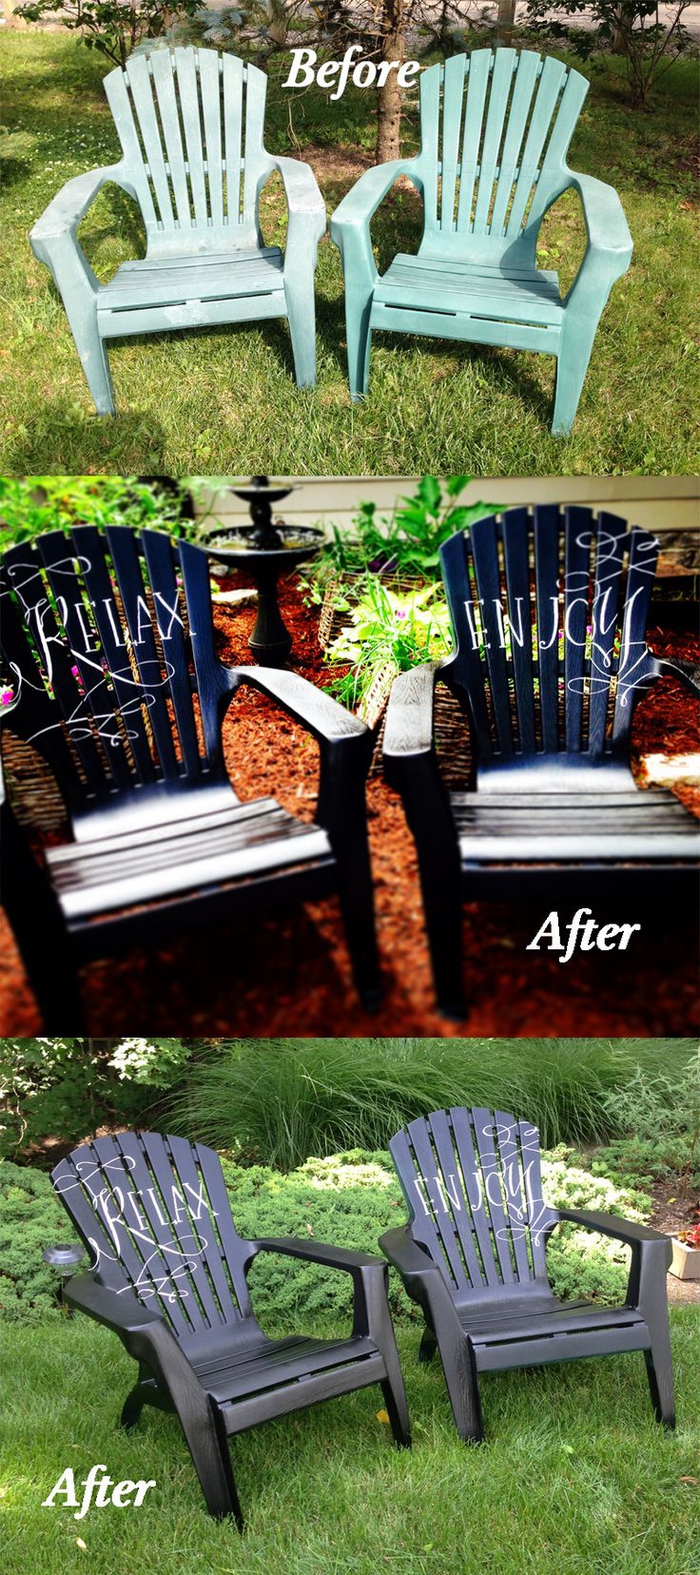 la transformation bluffante des chaises de jardin en plastique à quelques coups de peinture, peindre un meuble de façon originale